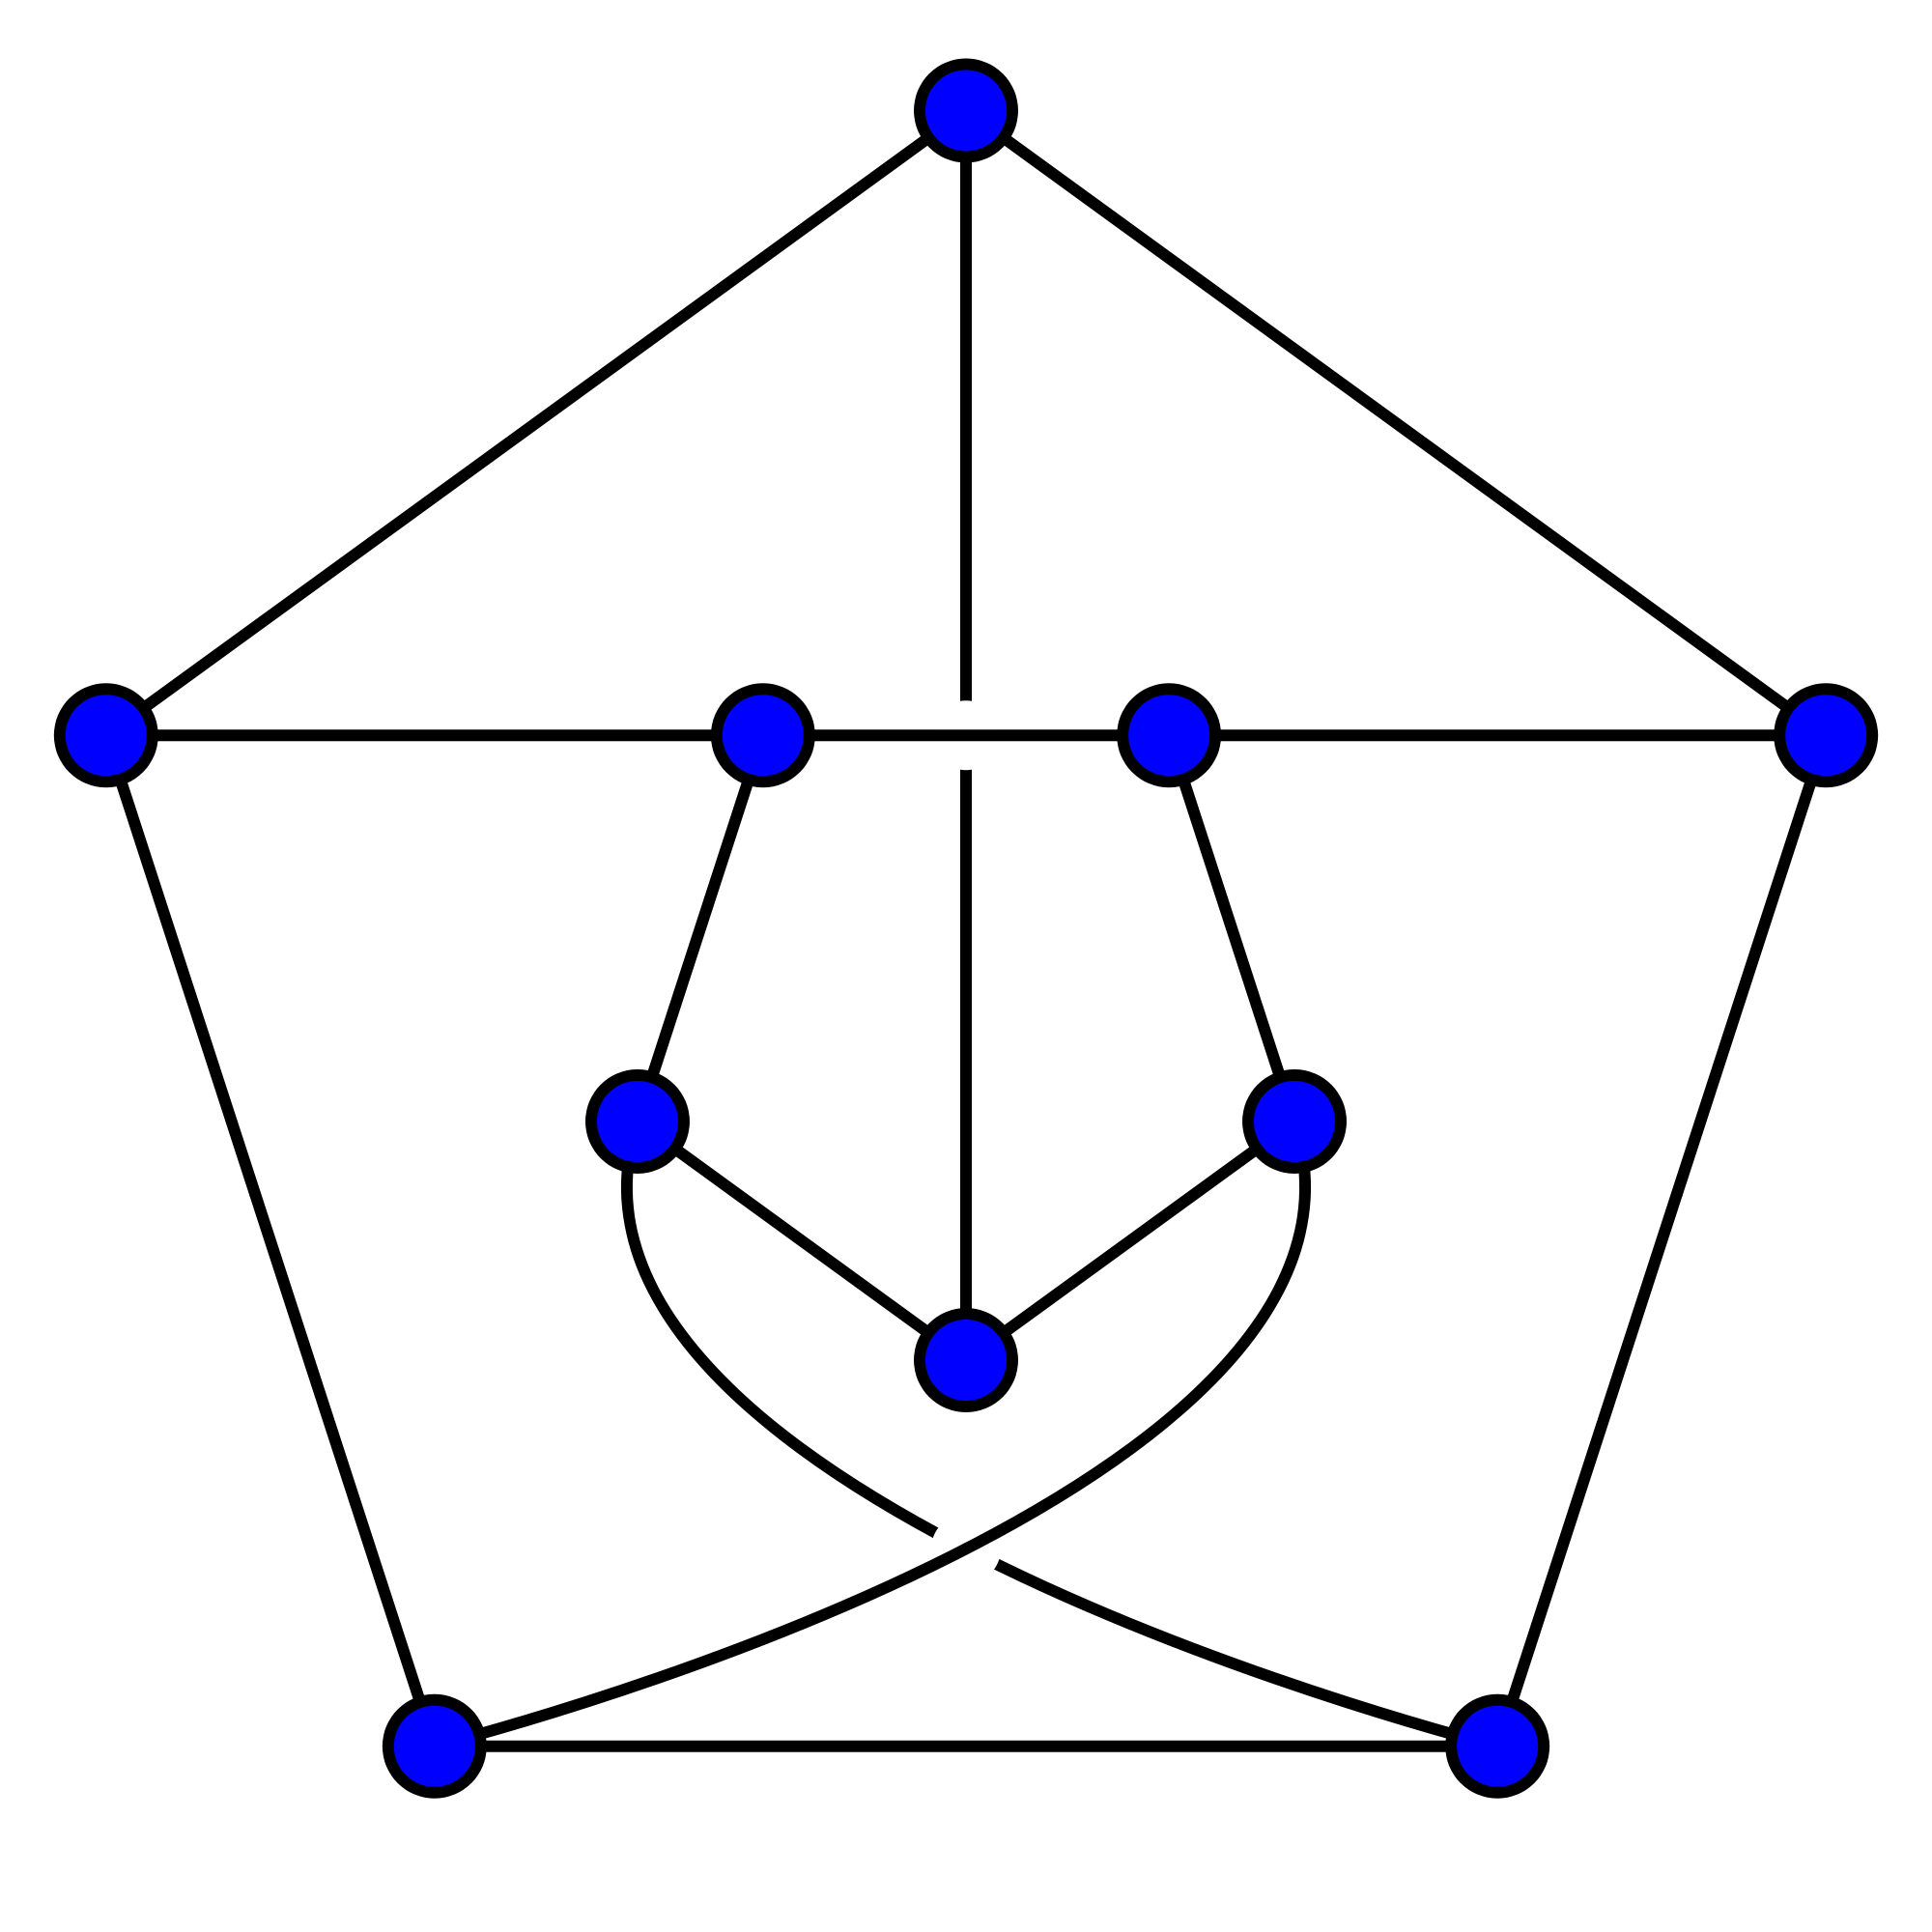 Petersen graph